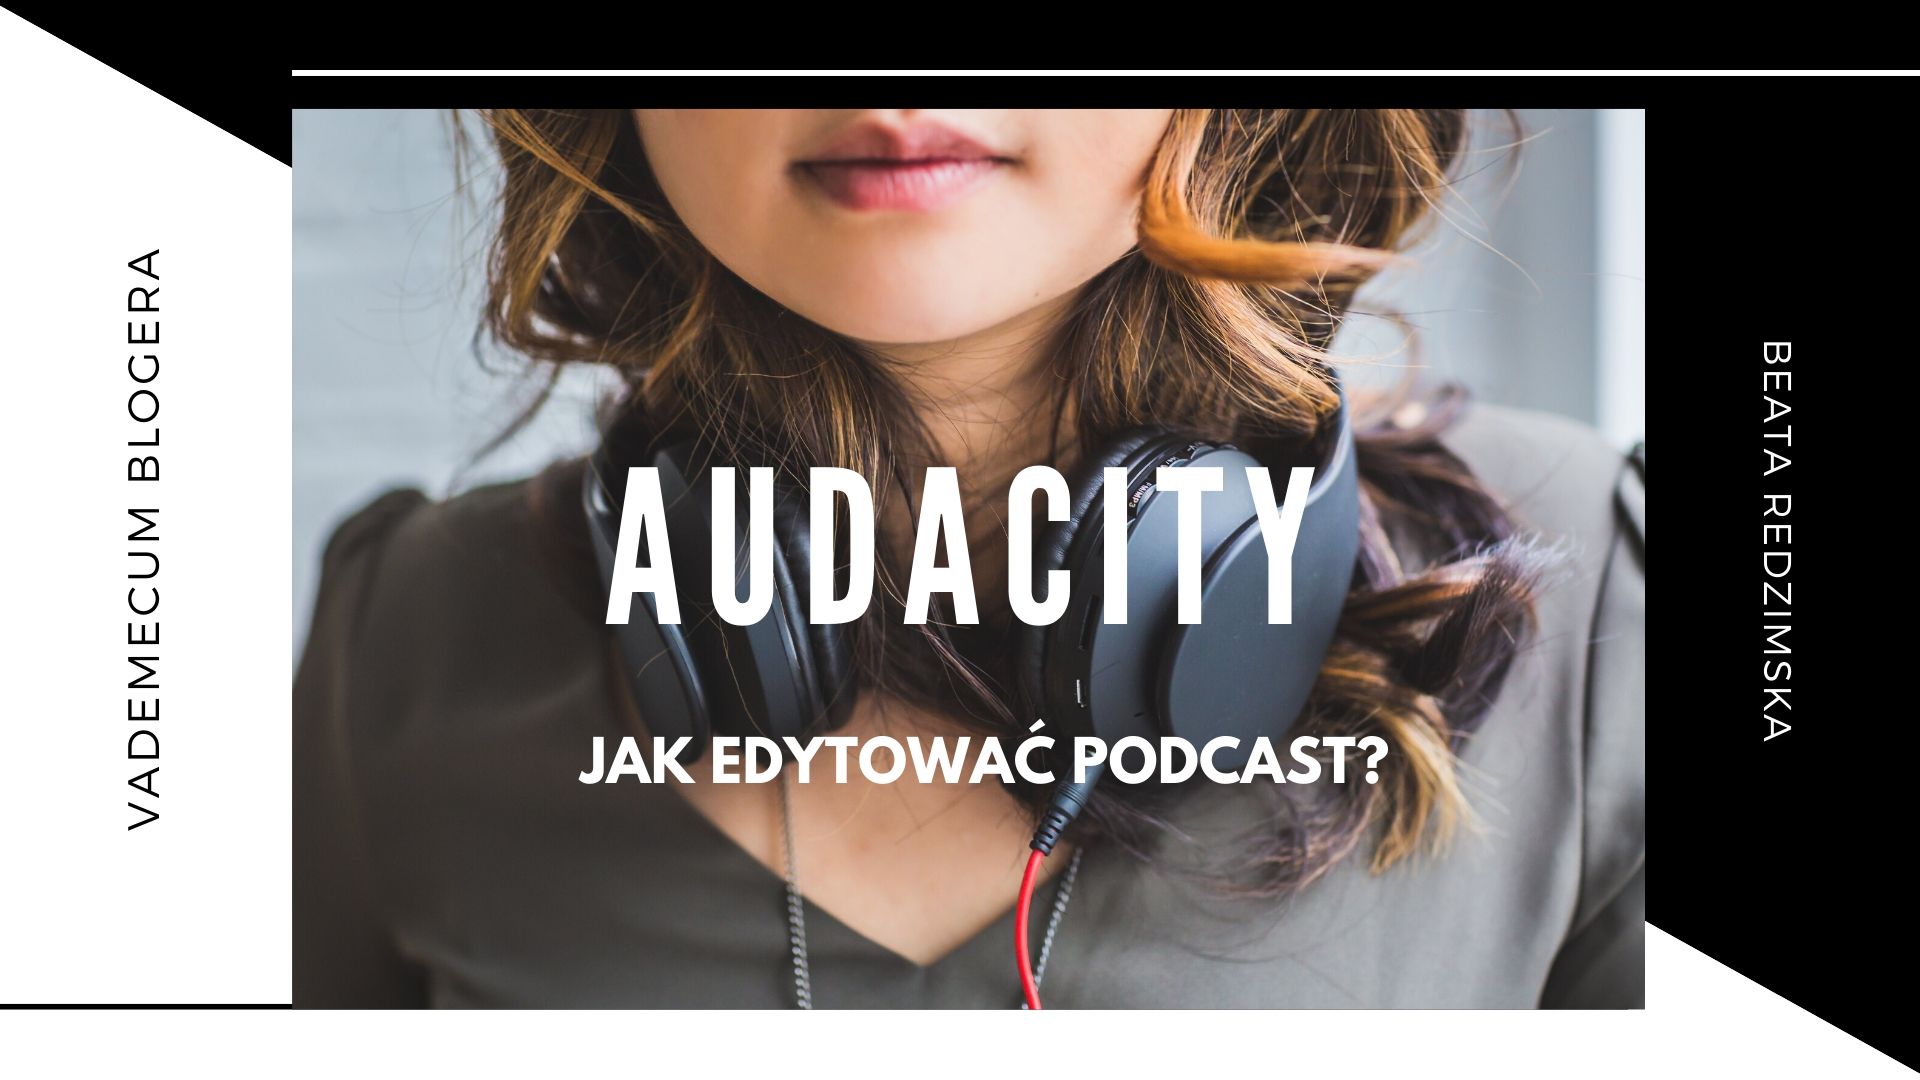 Jak edytować podcast w Audacityńź